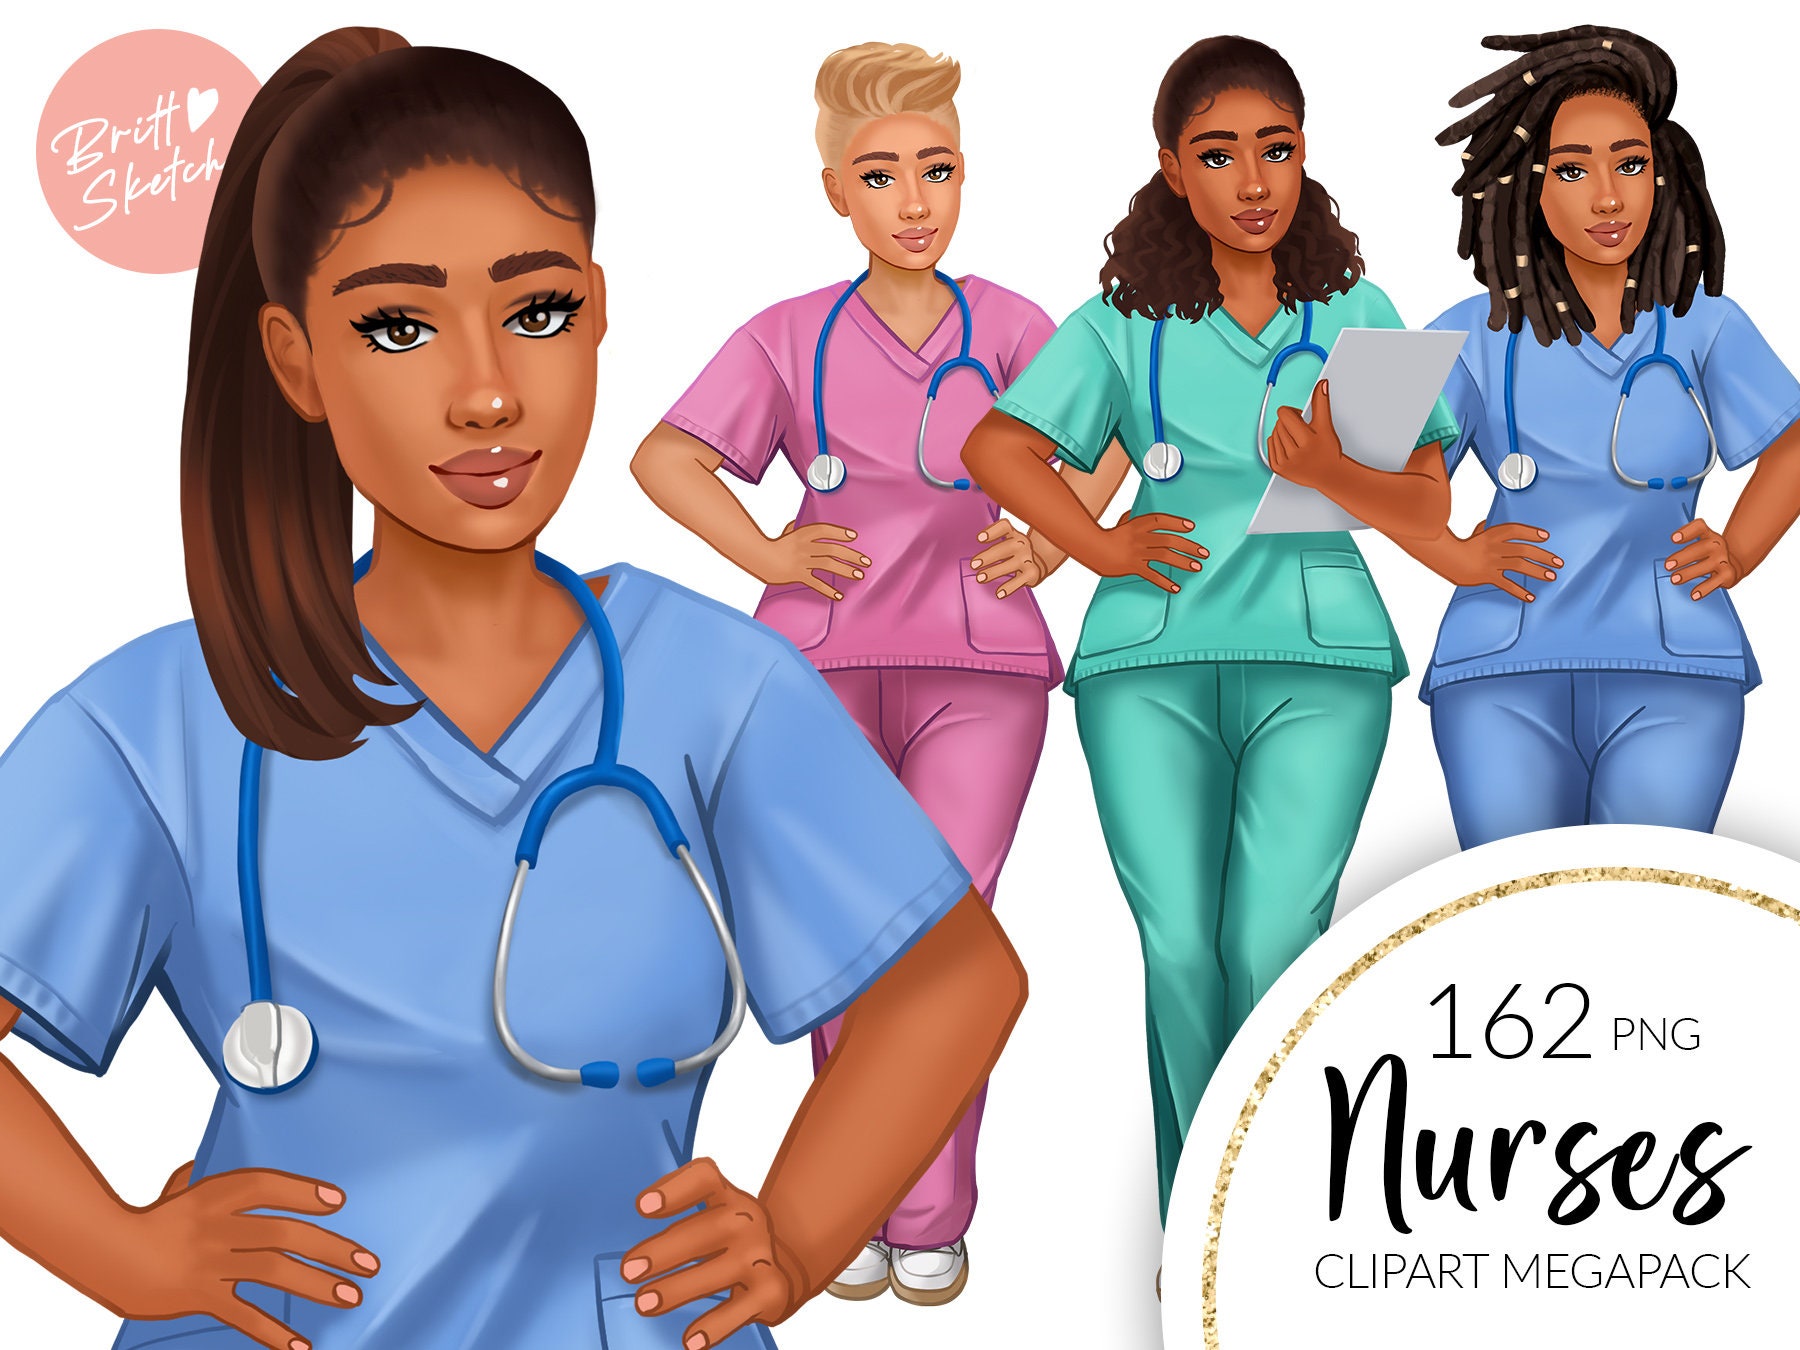 27 Cute Nurse Stuff! ideas  cute nurse, nurse, scrubs nursing